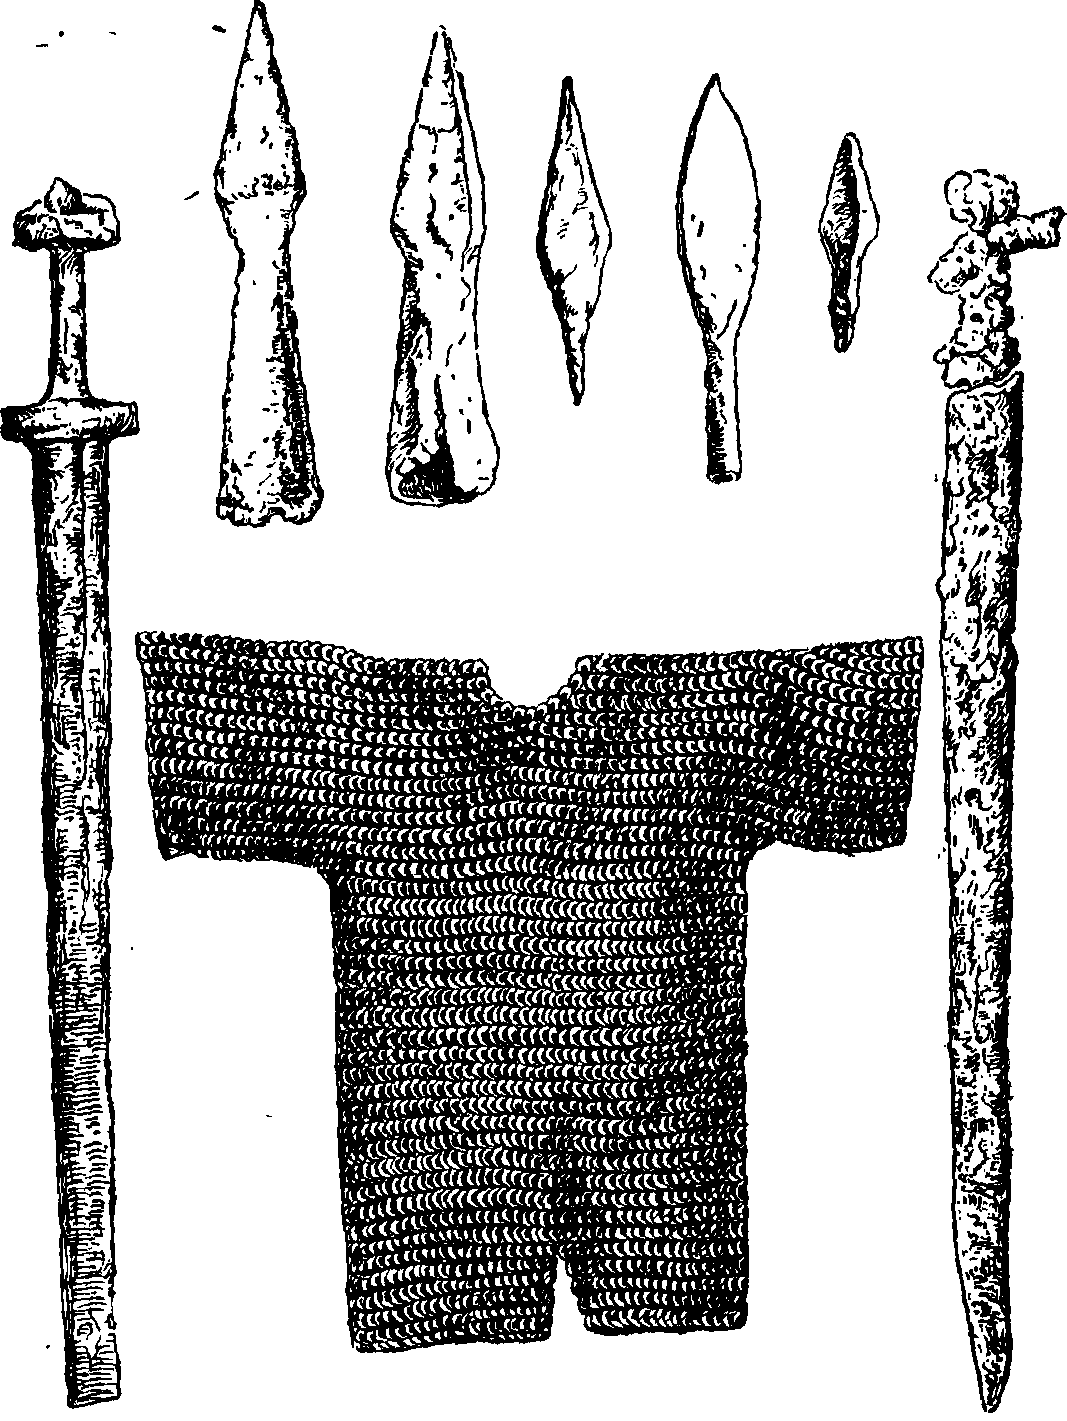 Русское вооружение XIII—XIV вв. (кольчуга, мечи, наконечники копий и стрел)